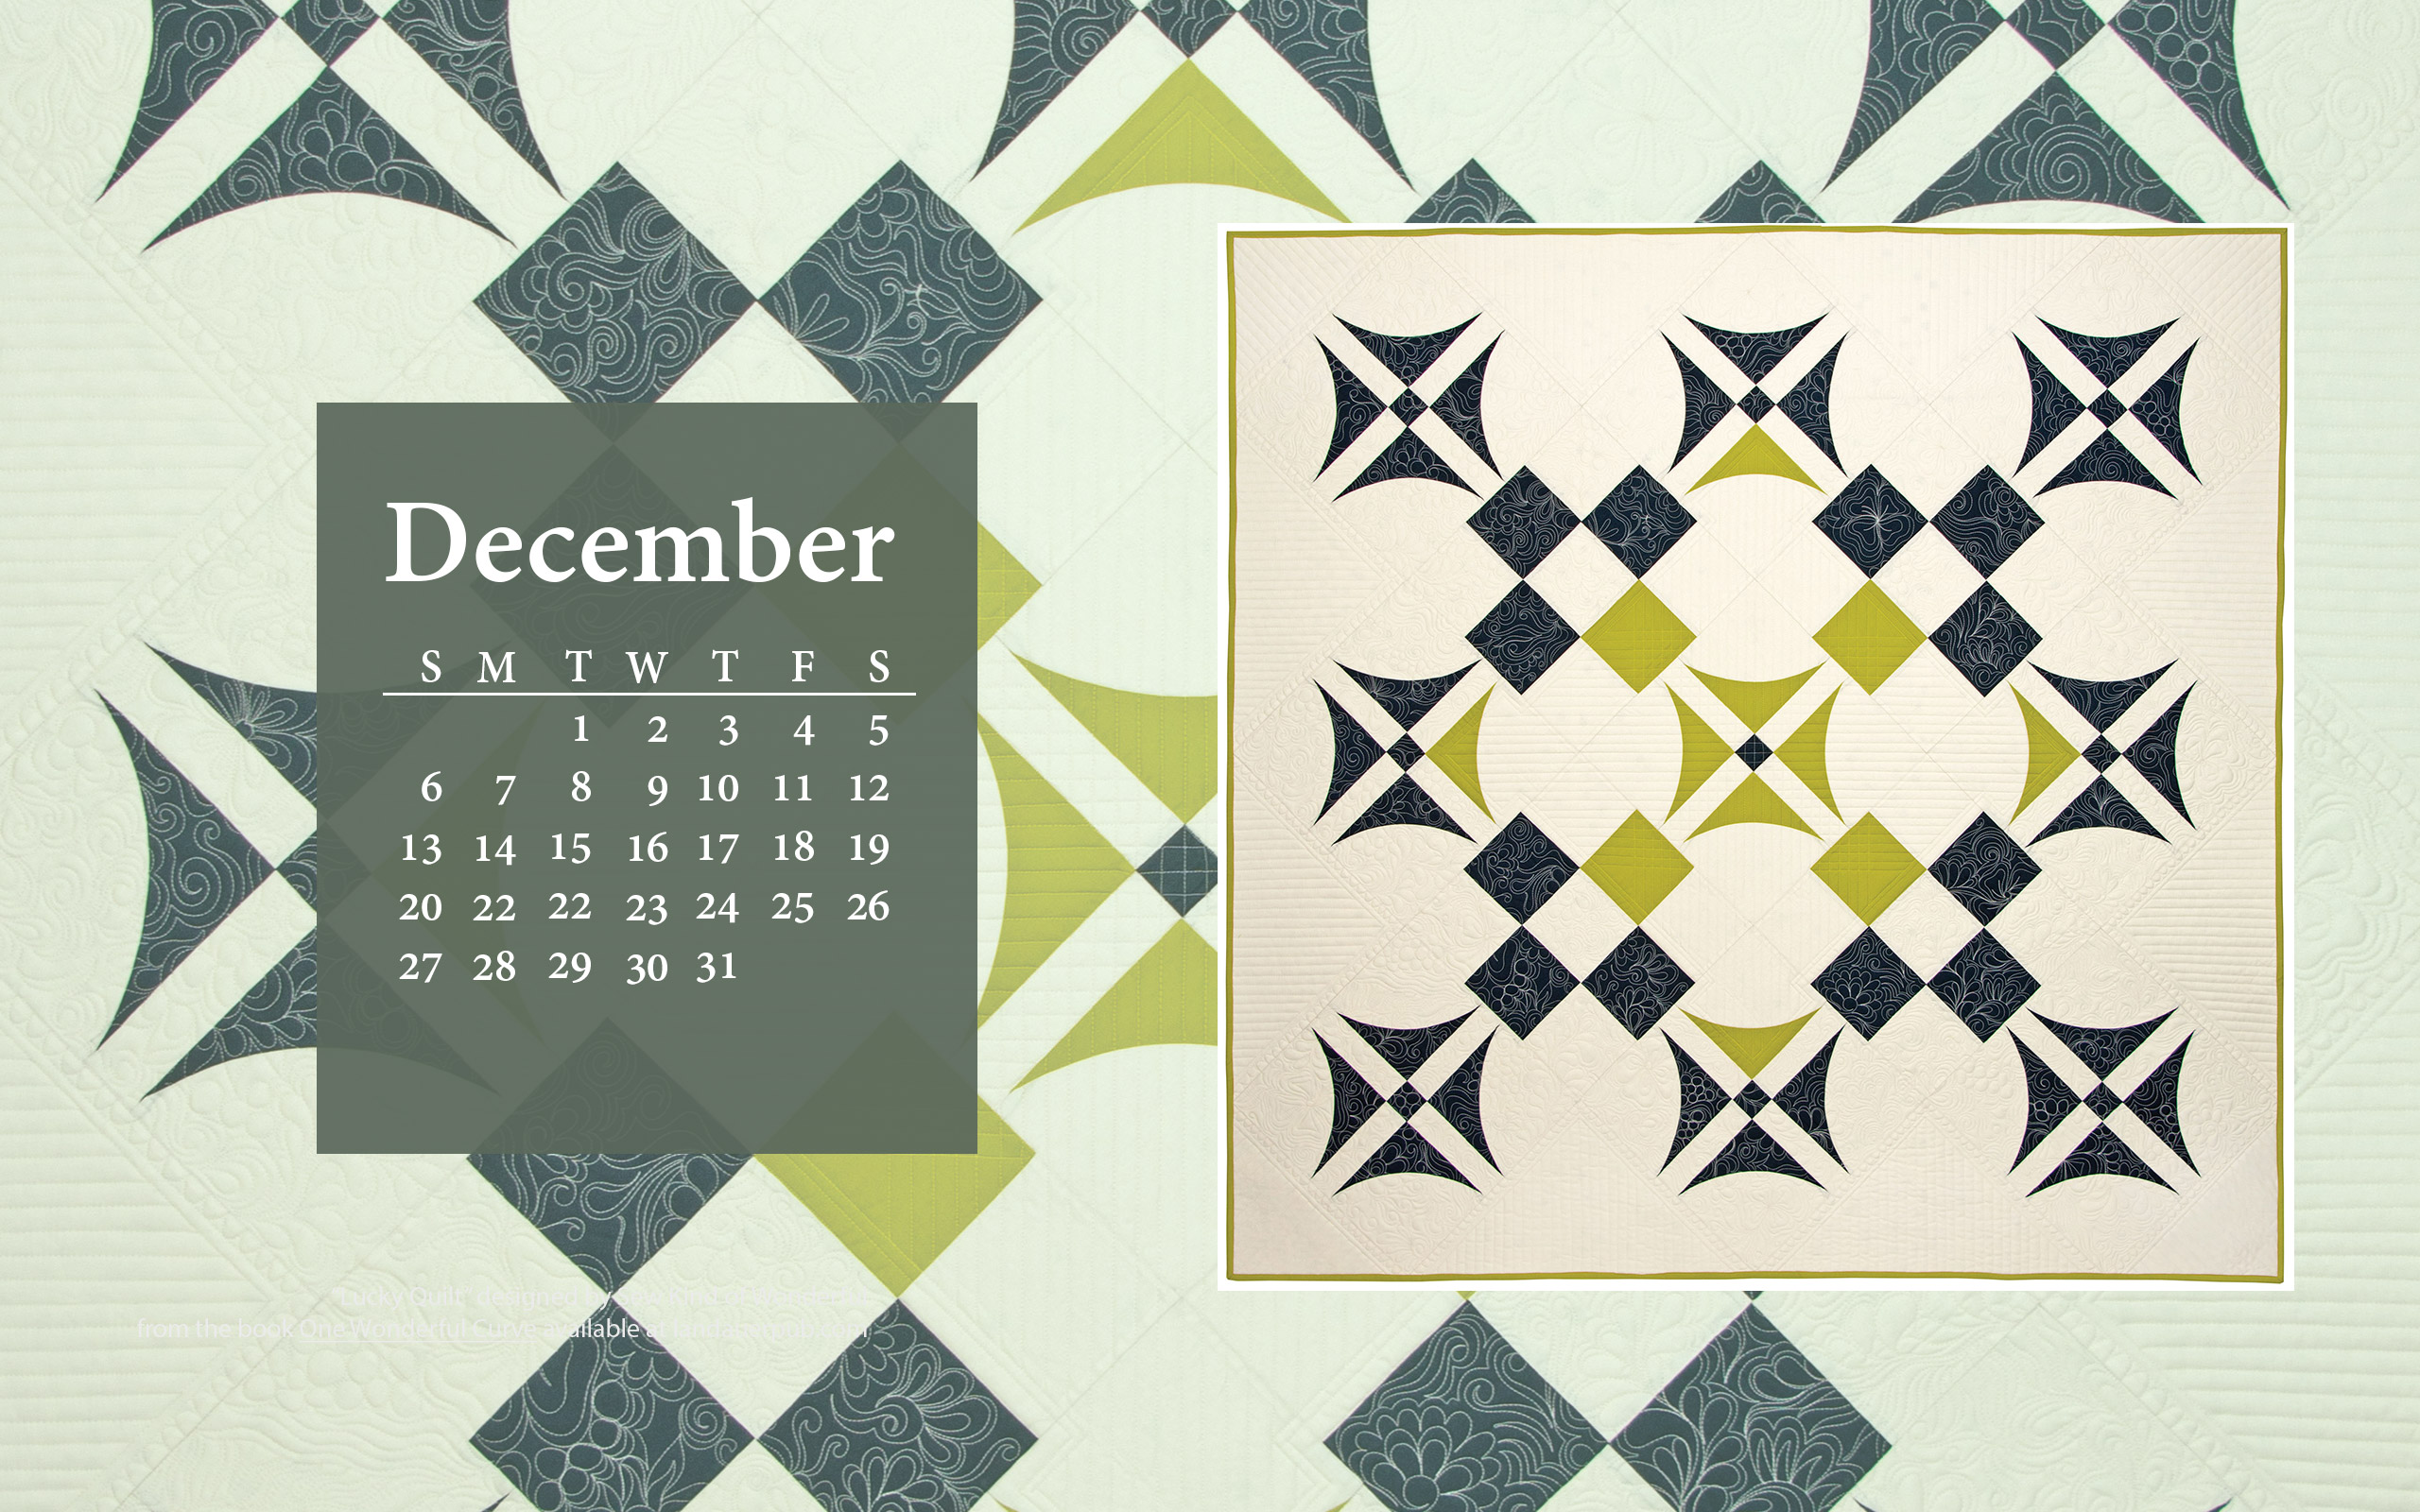 Quilt Calendar Puter Wallpaper December Books